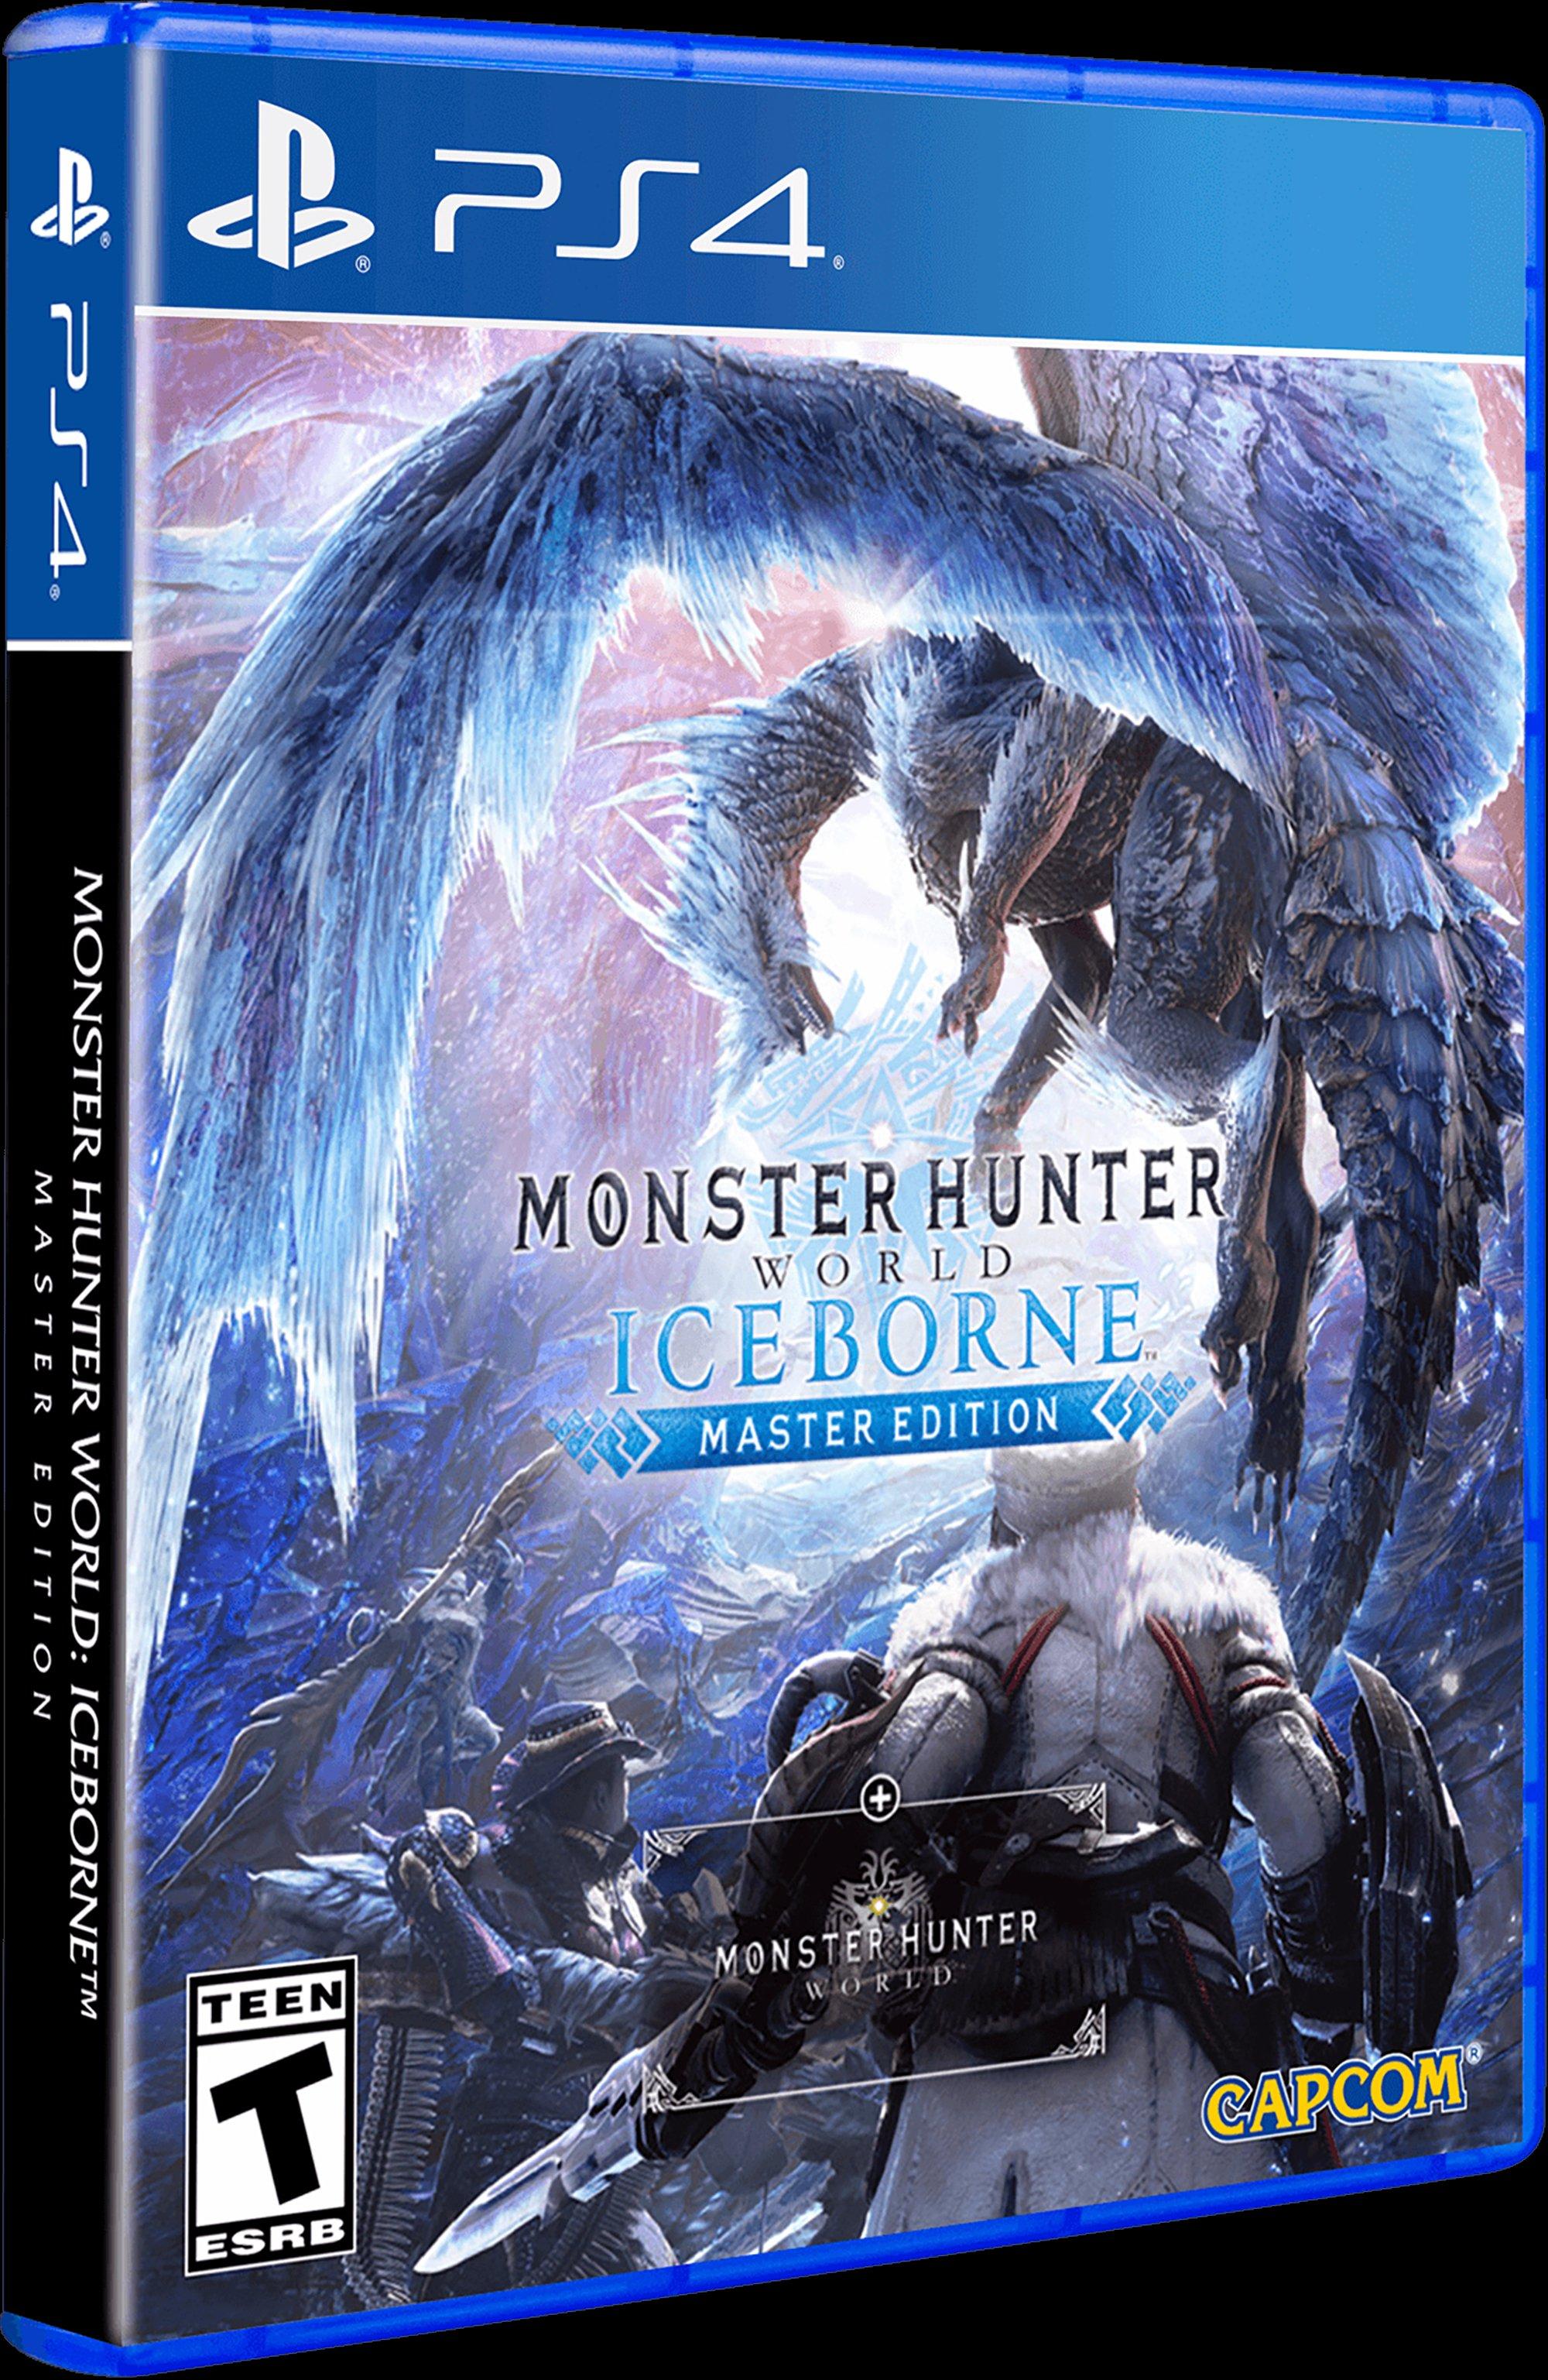 Monster Hunter: World Iceborne Master Edition - PlayStation 4 PlayStation 4 |